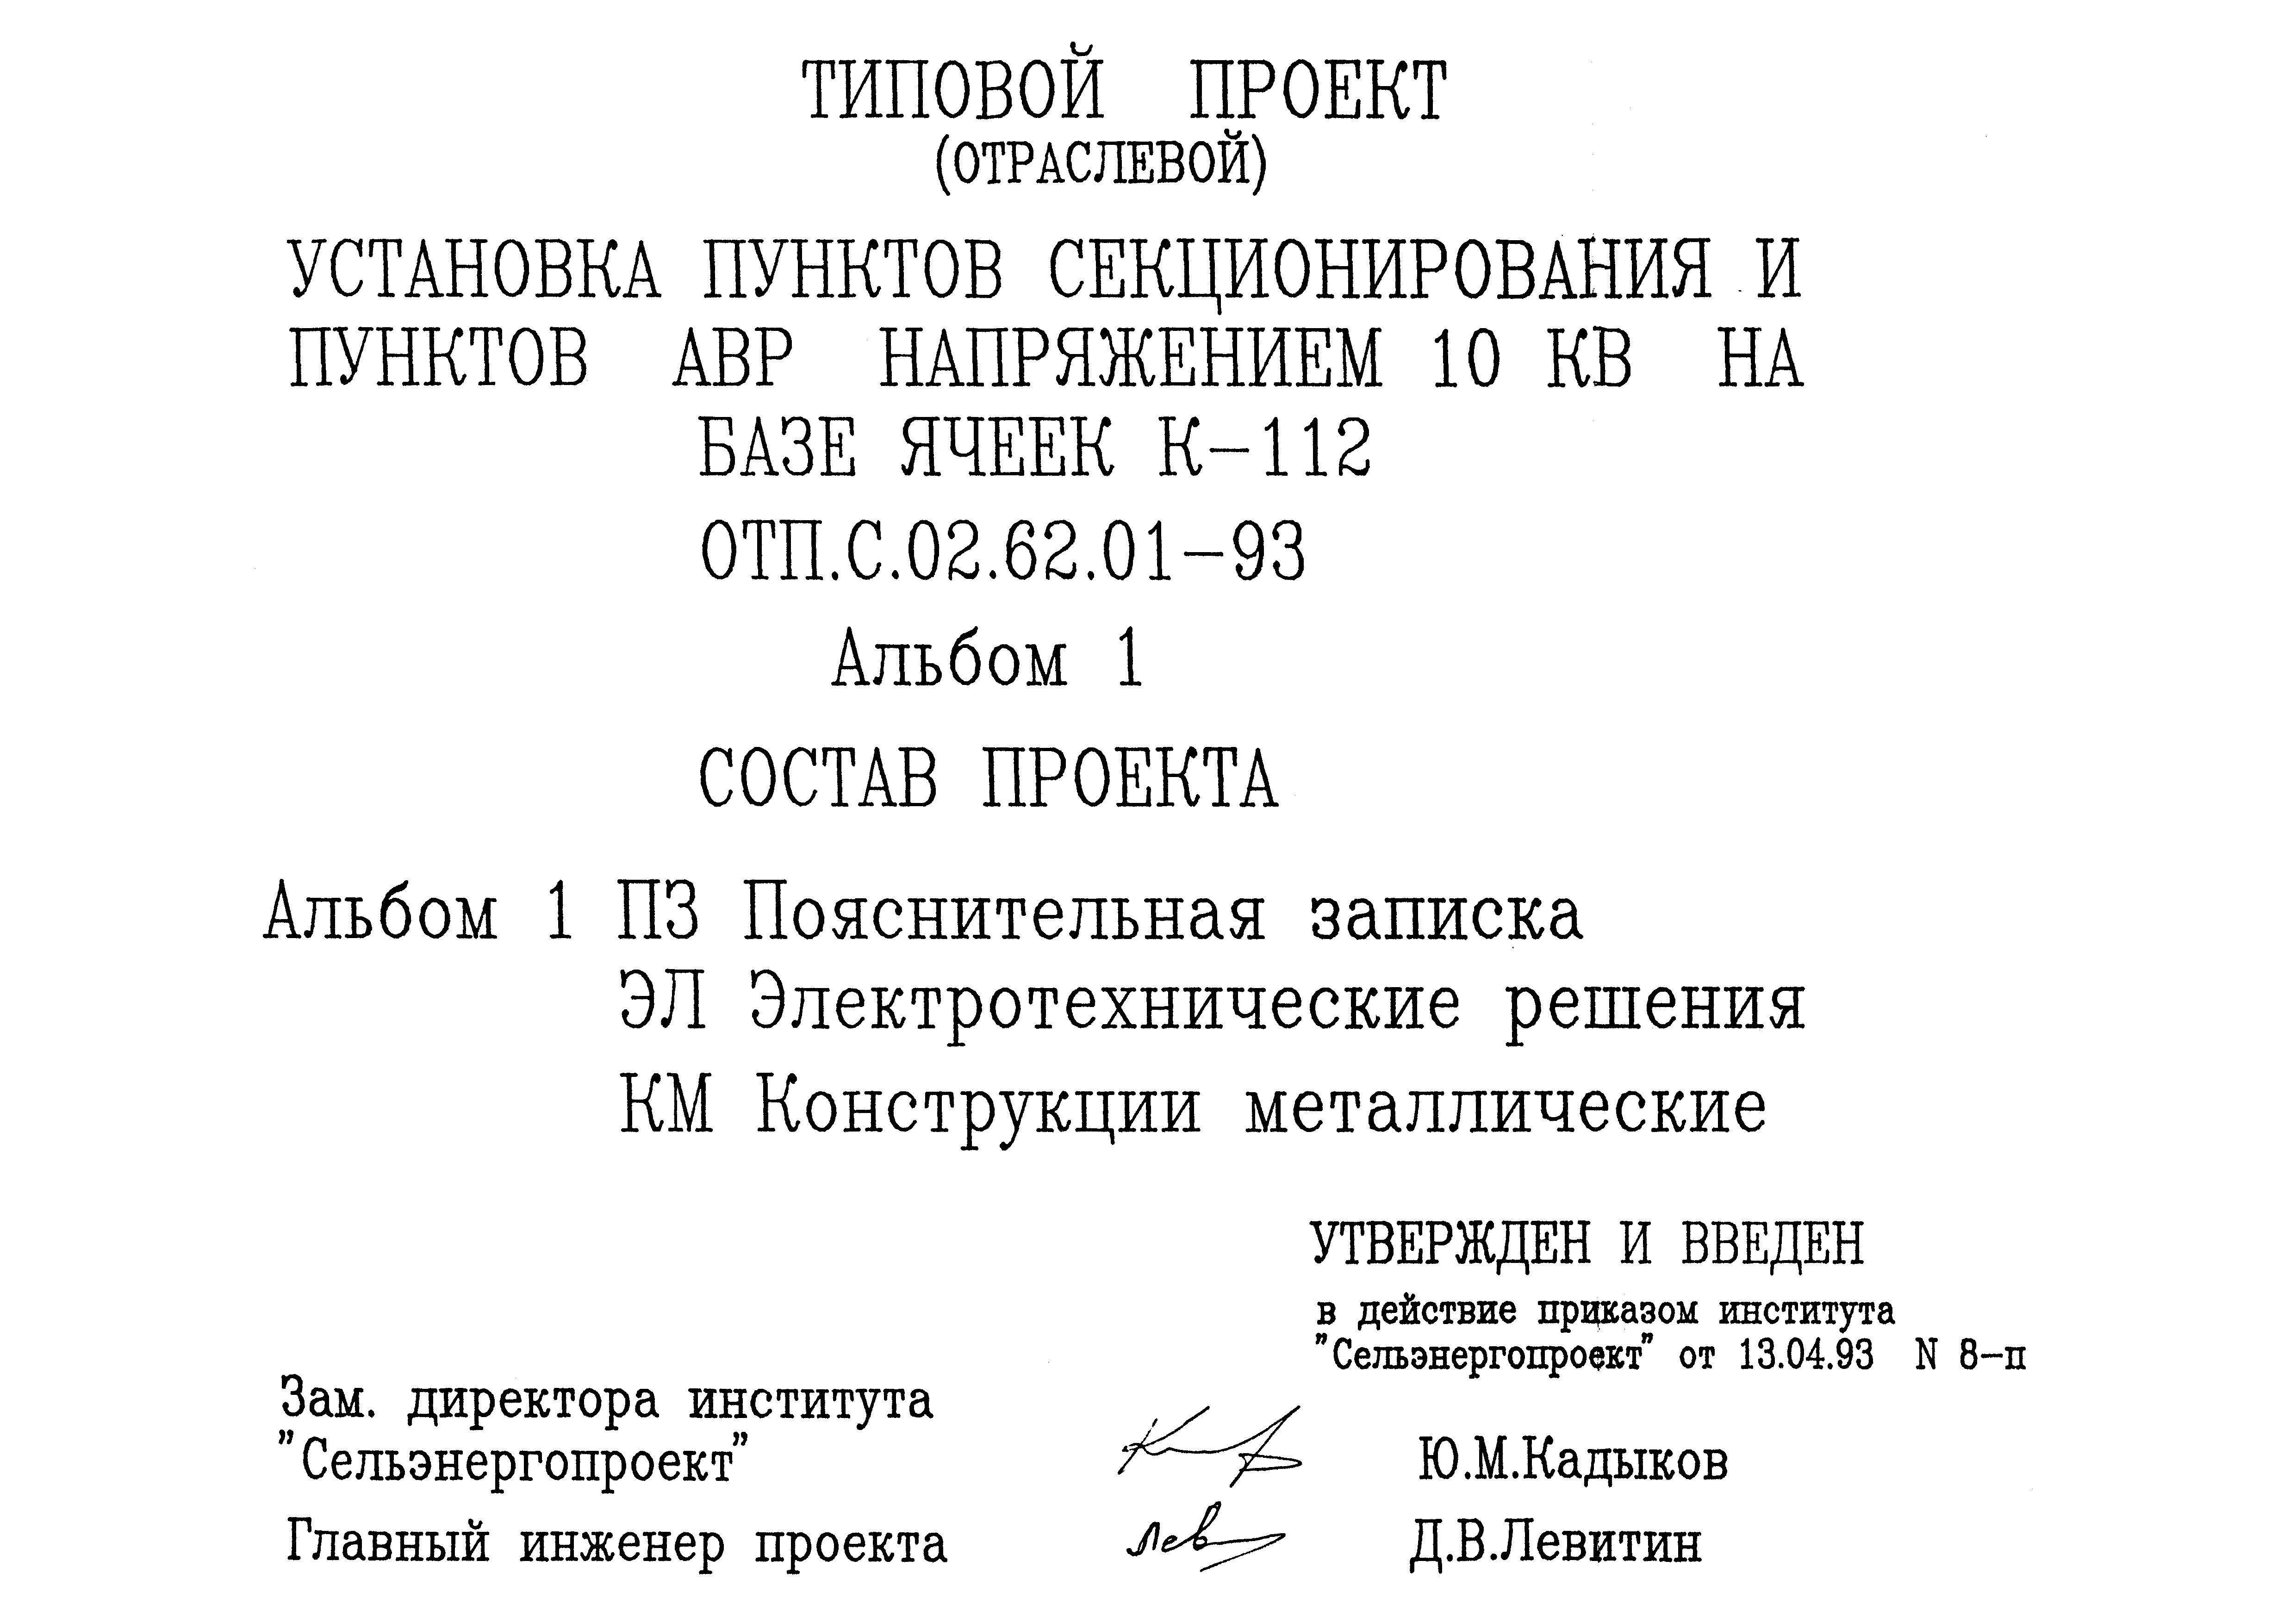 Типовой проект ОТП.С.02.62.01-93